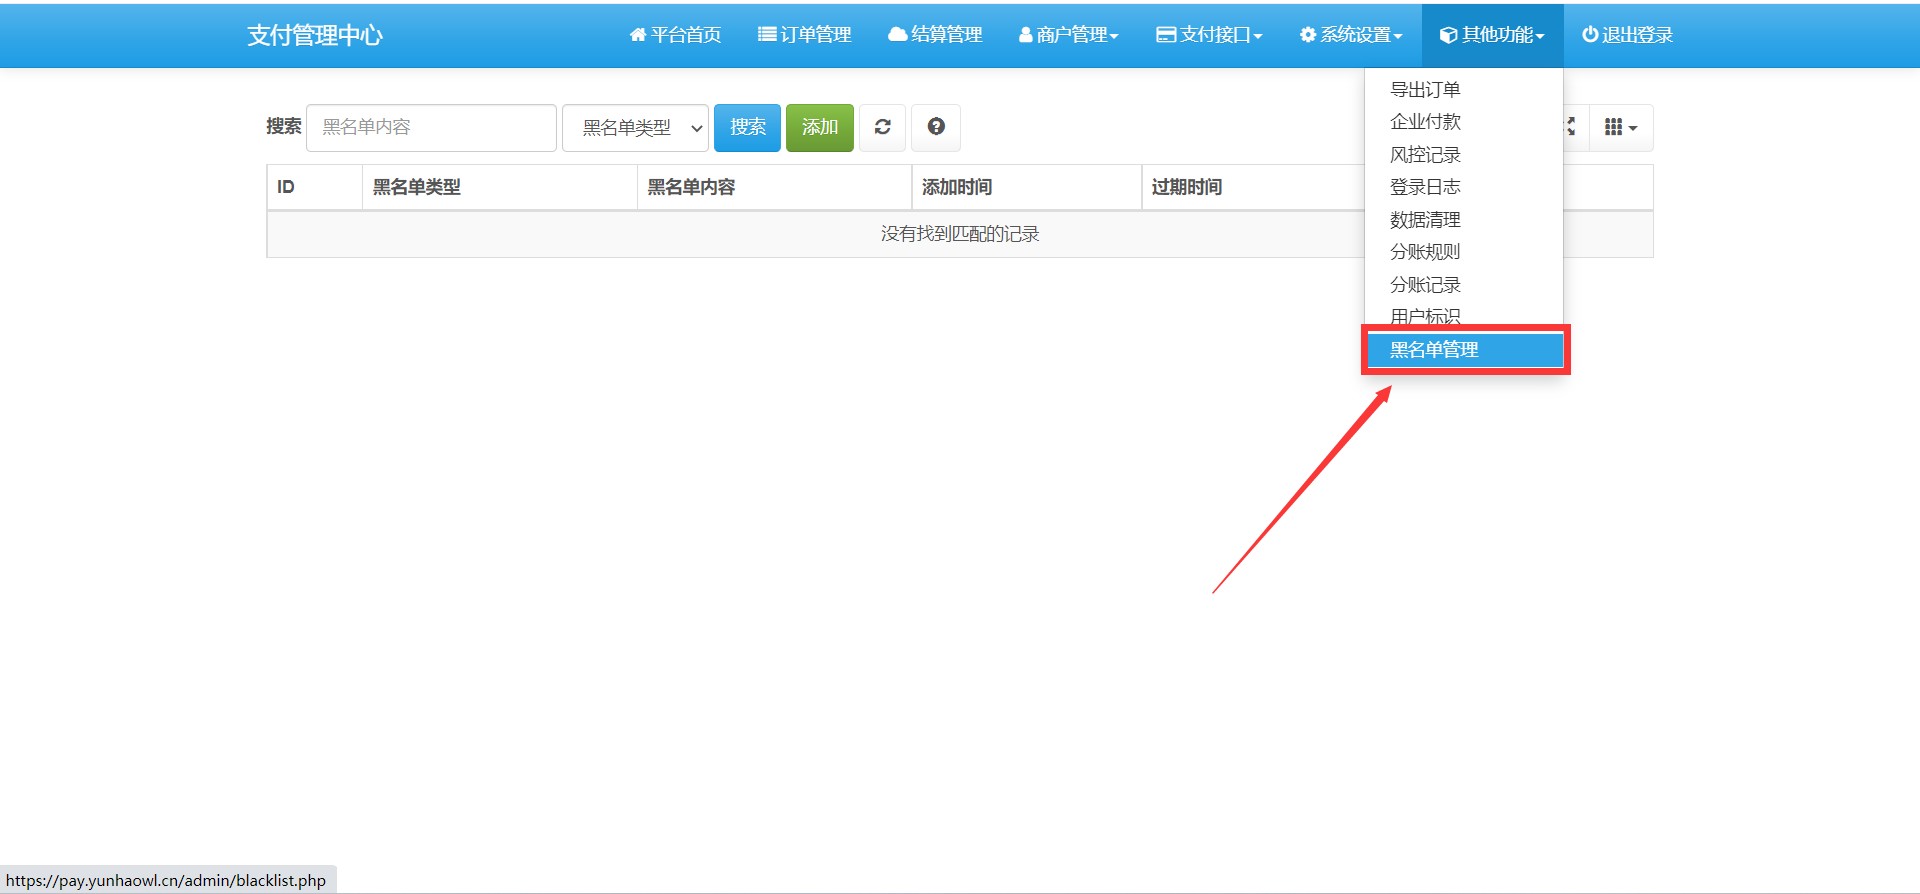 6月30日最新更新彩虹易支付官方完整包包+升级包-云浩资源网